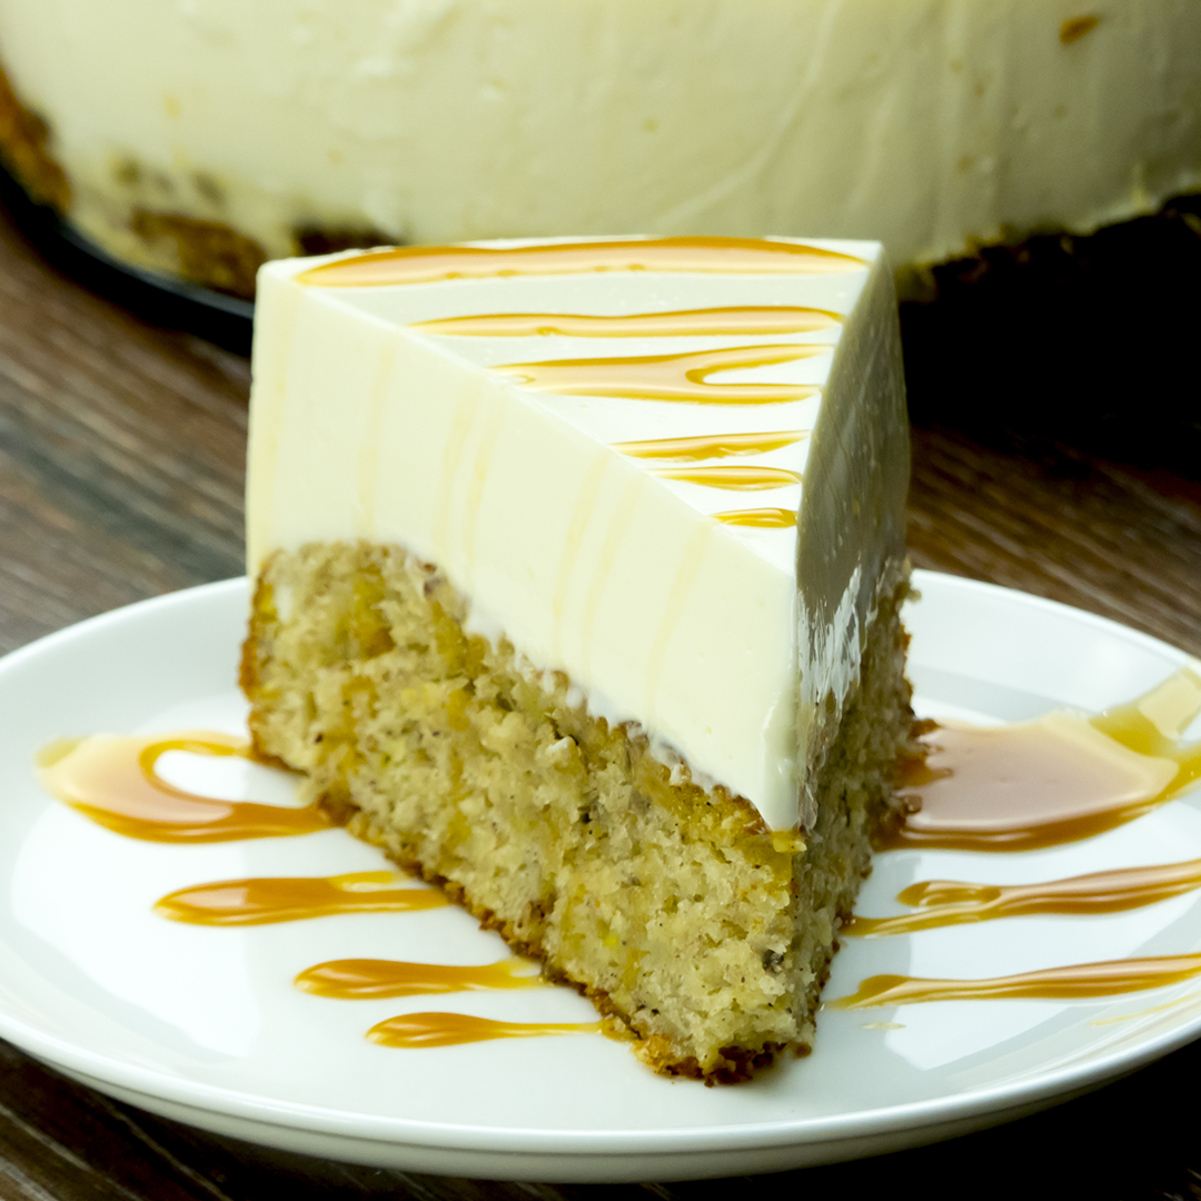 Încercați acest cheesecake cu blat din banane! Este o rețetă de la americani, ușor de făcut